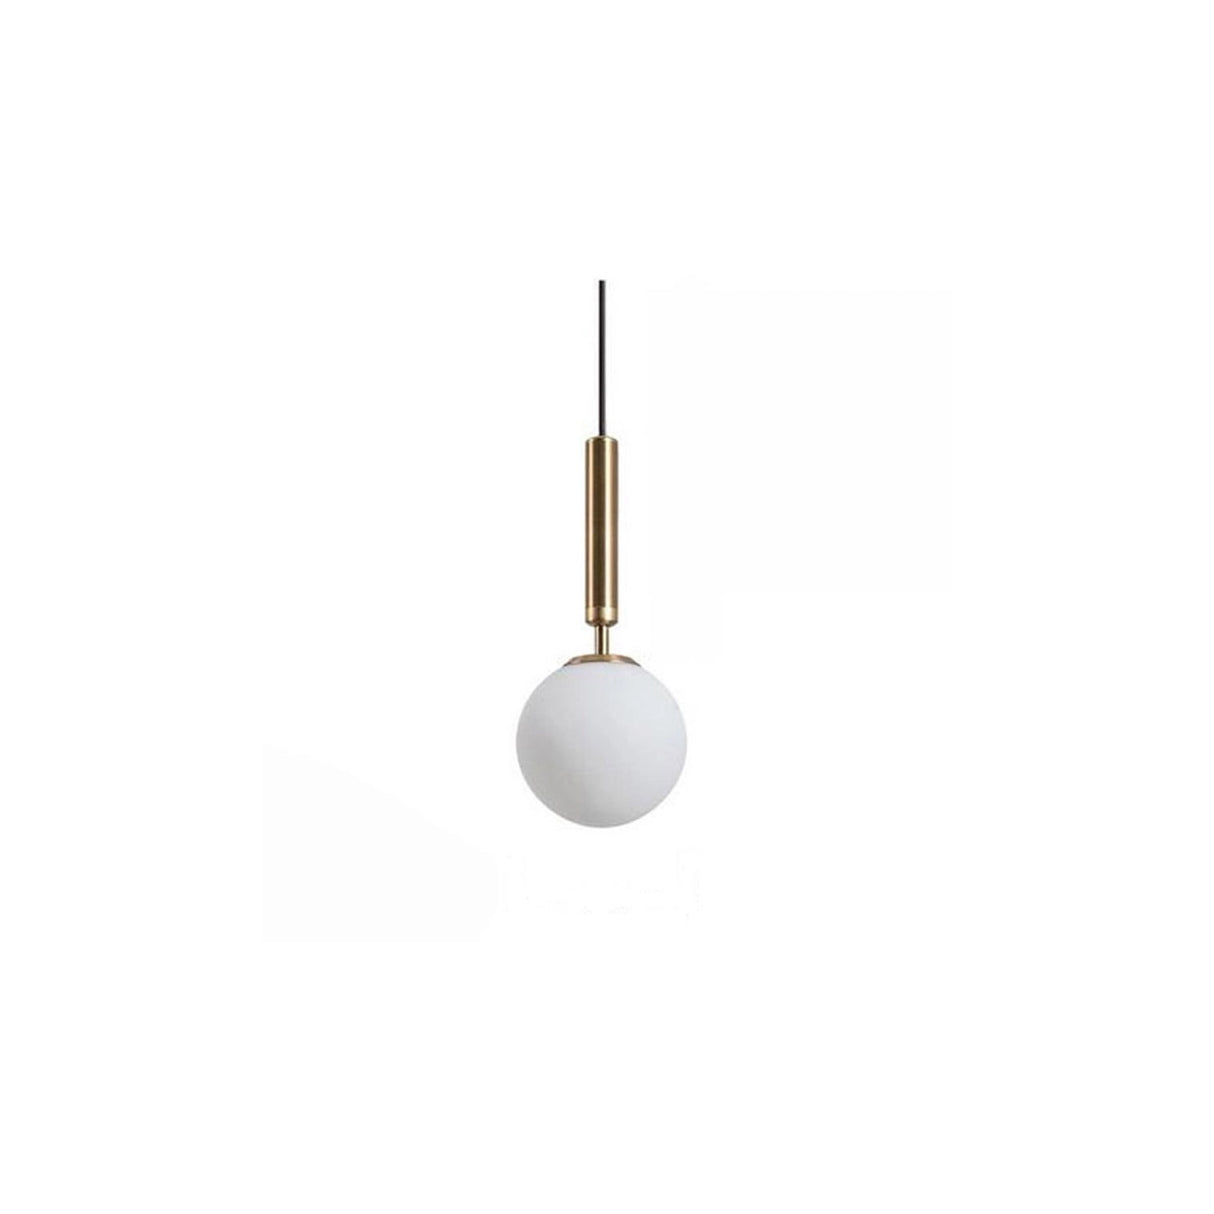 Lámpara colgante moderna con bola de cristal oro lámpara de techo Openbox